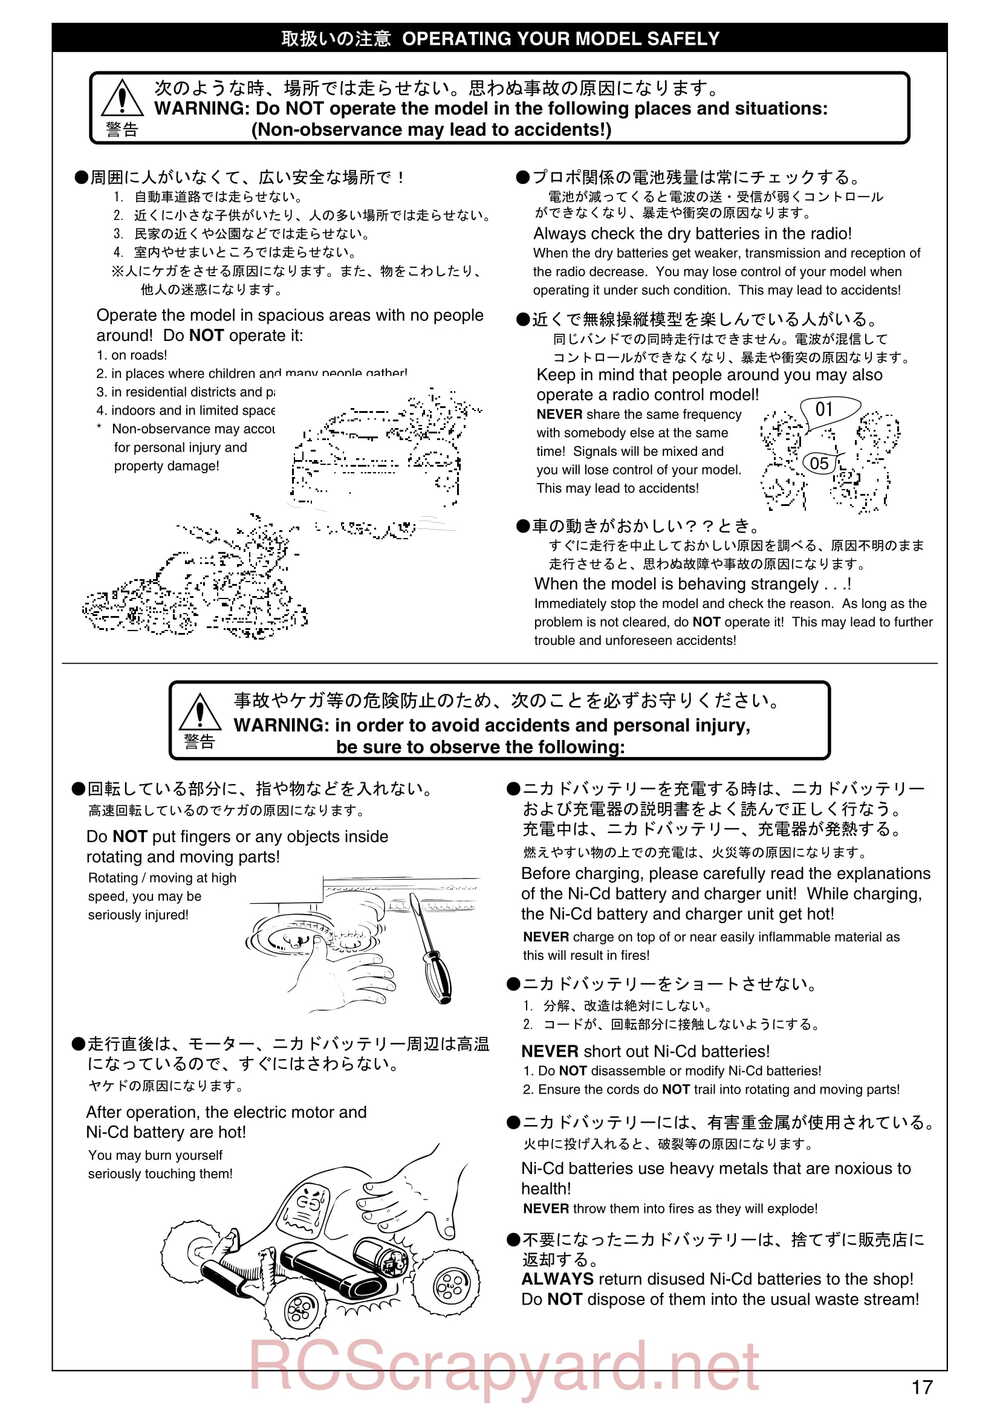 Kyosho - 30075 - Lazer-ZX-S-Evo - Manual - Page 17